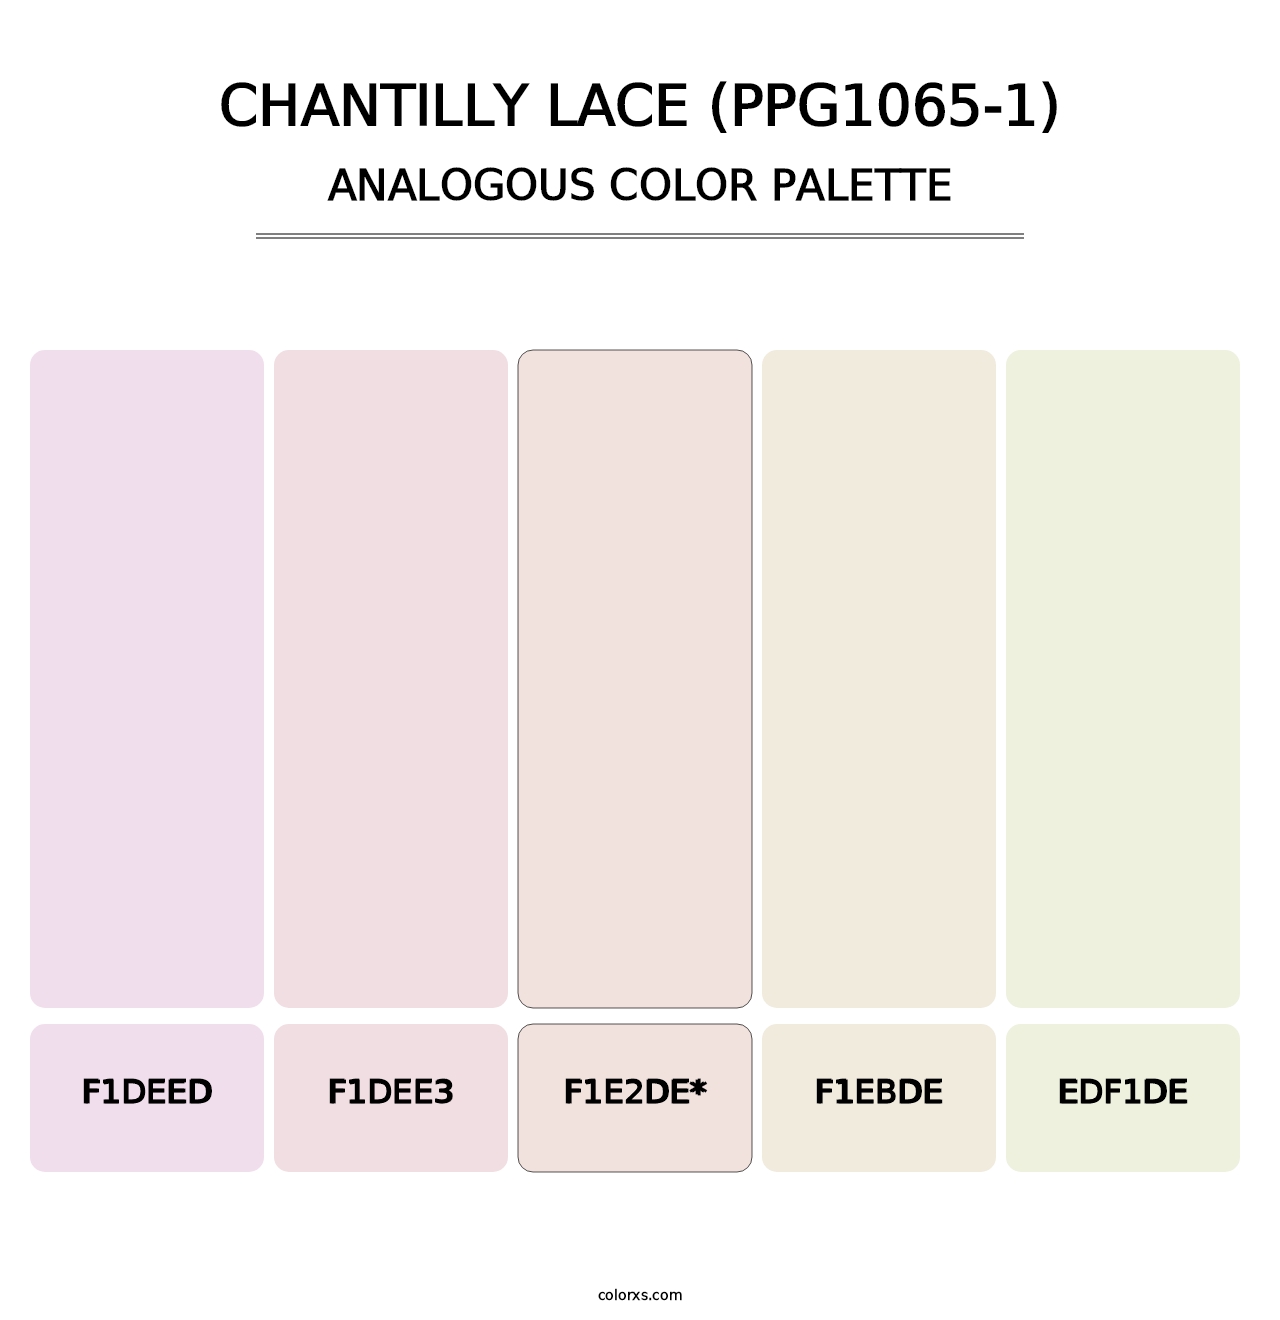 Chantilly Lace (PPG1065-1) - Analogous Color Palette